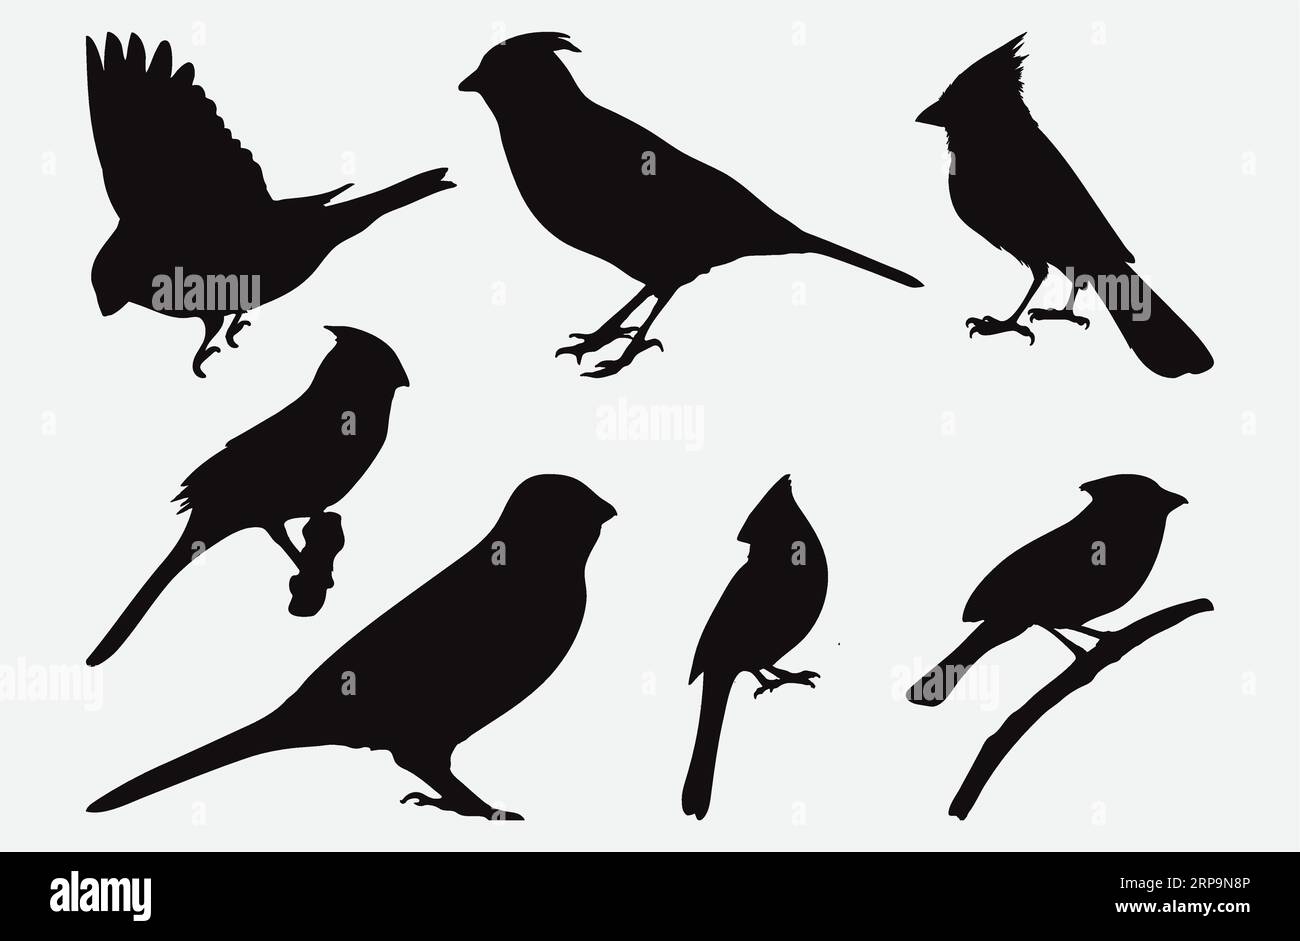 Graziosa collezione Northern Cardinal silhouette, uccelli in varie pose e stili Illustrazione Vettoriale